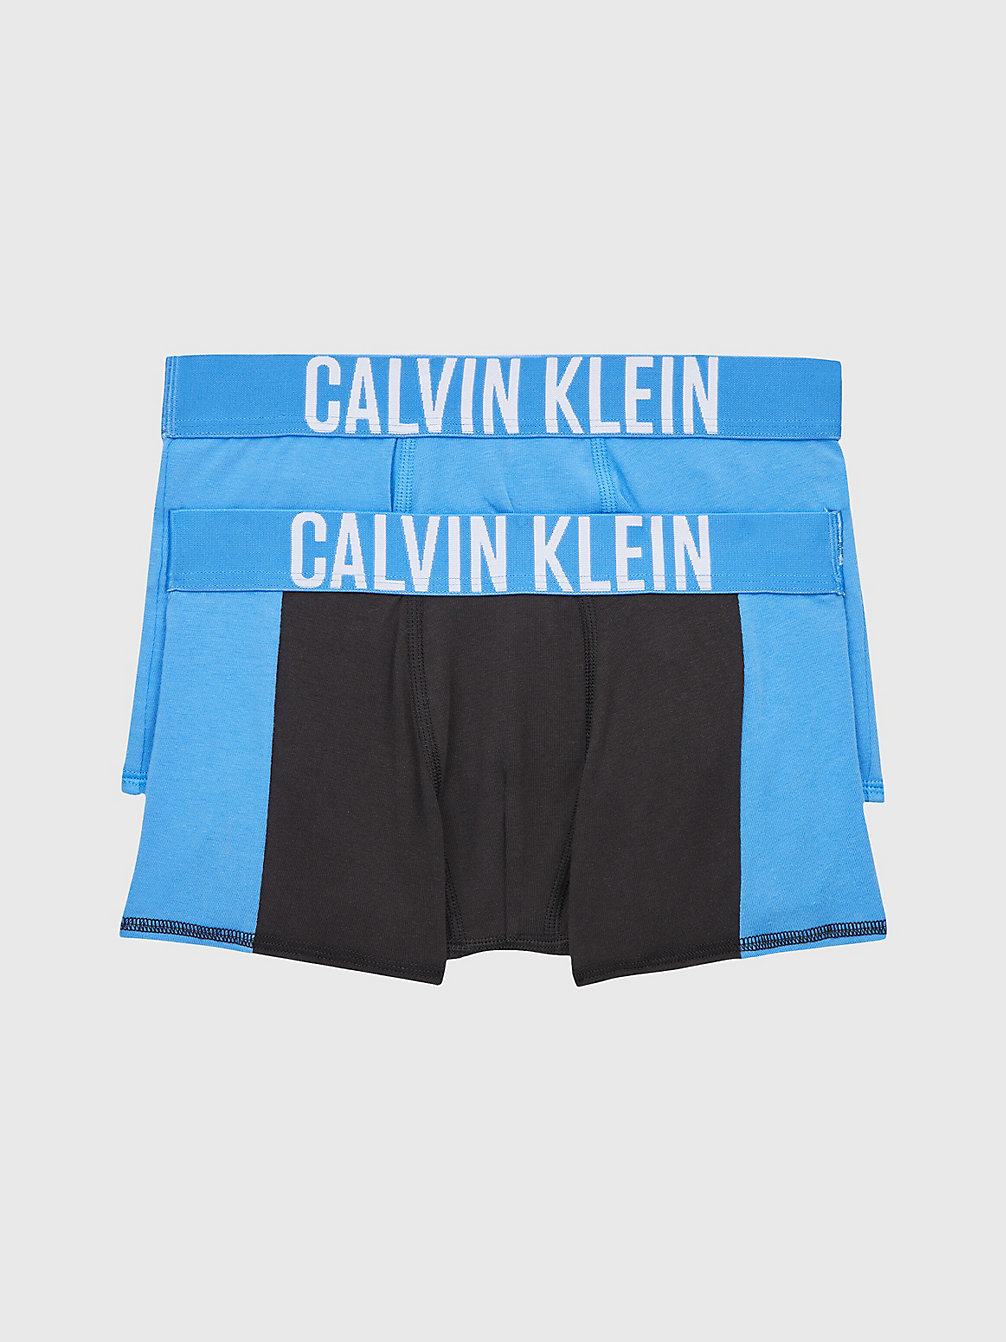 ELECTRICAQUA/PVHBLACK 2er-Pack Boxershorts Für Jungen – Intense Power undefined Jungen Calvin Klein